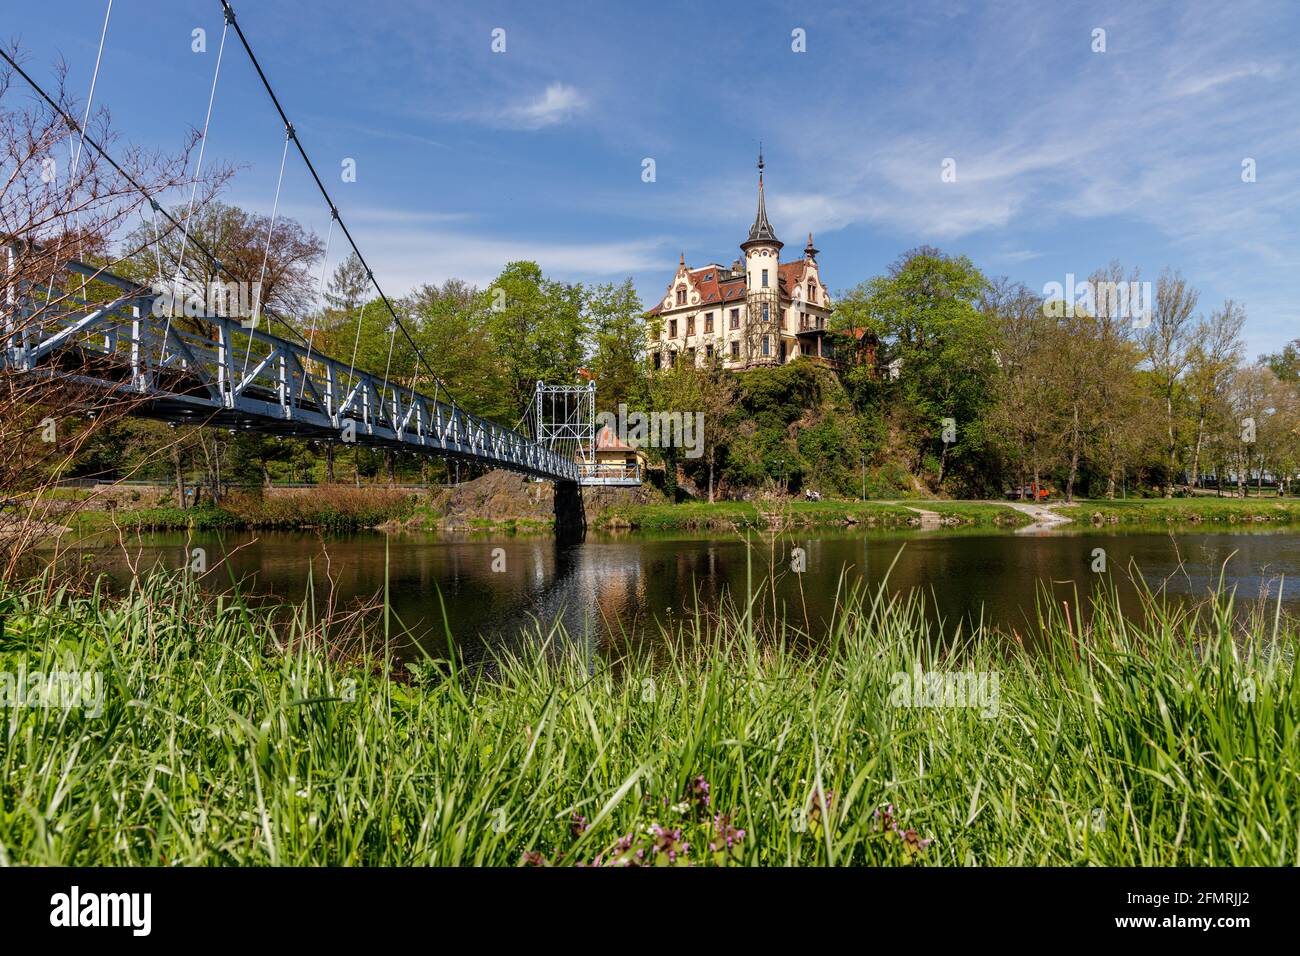 Grimma, Sachsen, Deutschland- 05 11 2021, die kleine Stadt an der Mulde ist bekannt als die "Perle des Muldetals"- Hängebrücke in der Nähe der Geschichte Stockfoto